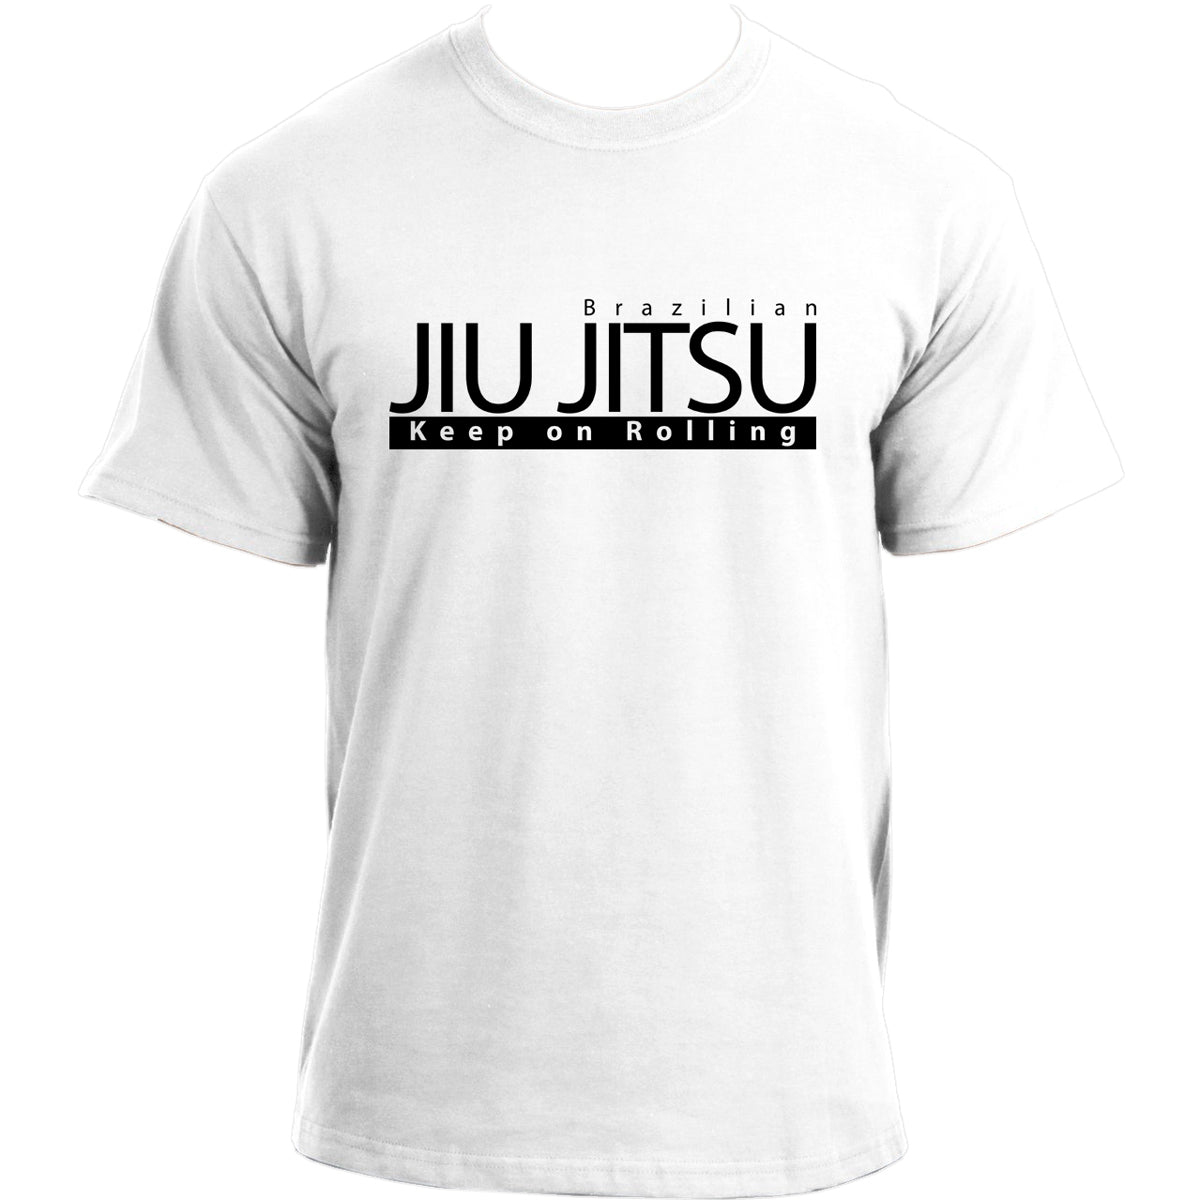 Jiu Jitsu Keep on Rolling T-Shirt I Brazilian Jiu Jitsu T Shirt I Jiu-Jitsu Sports MMA BJJ tshirt